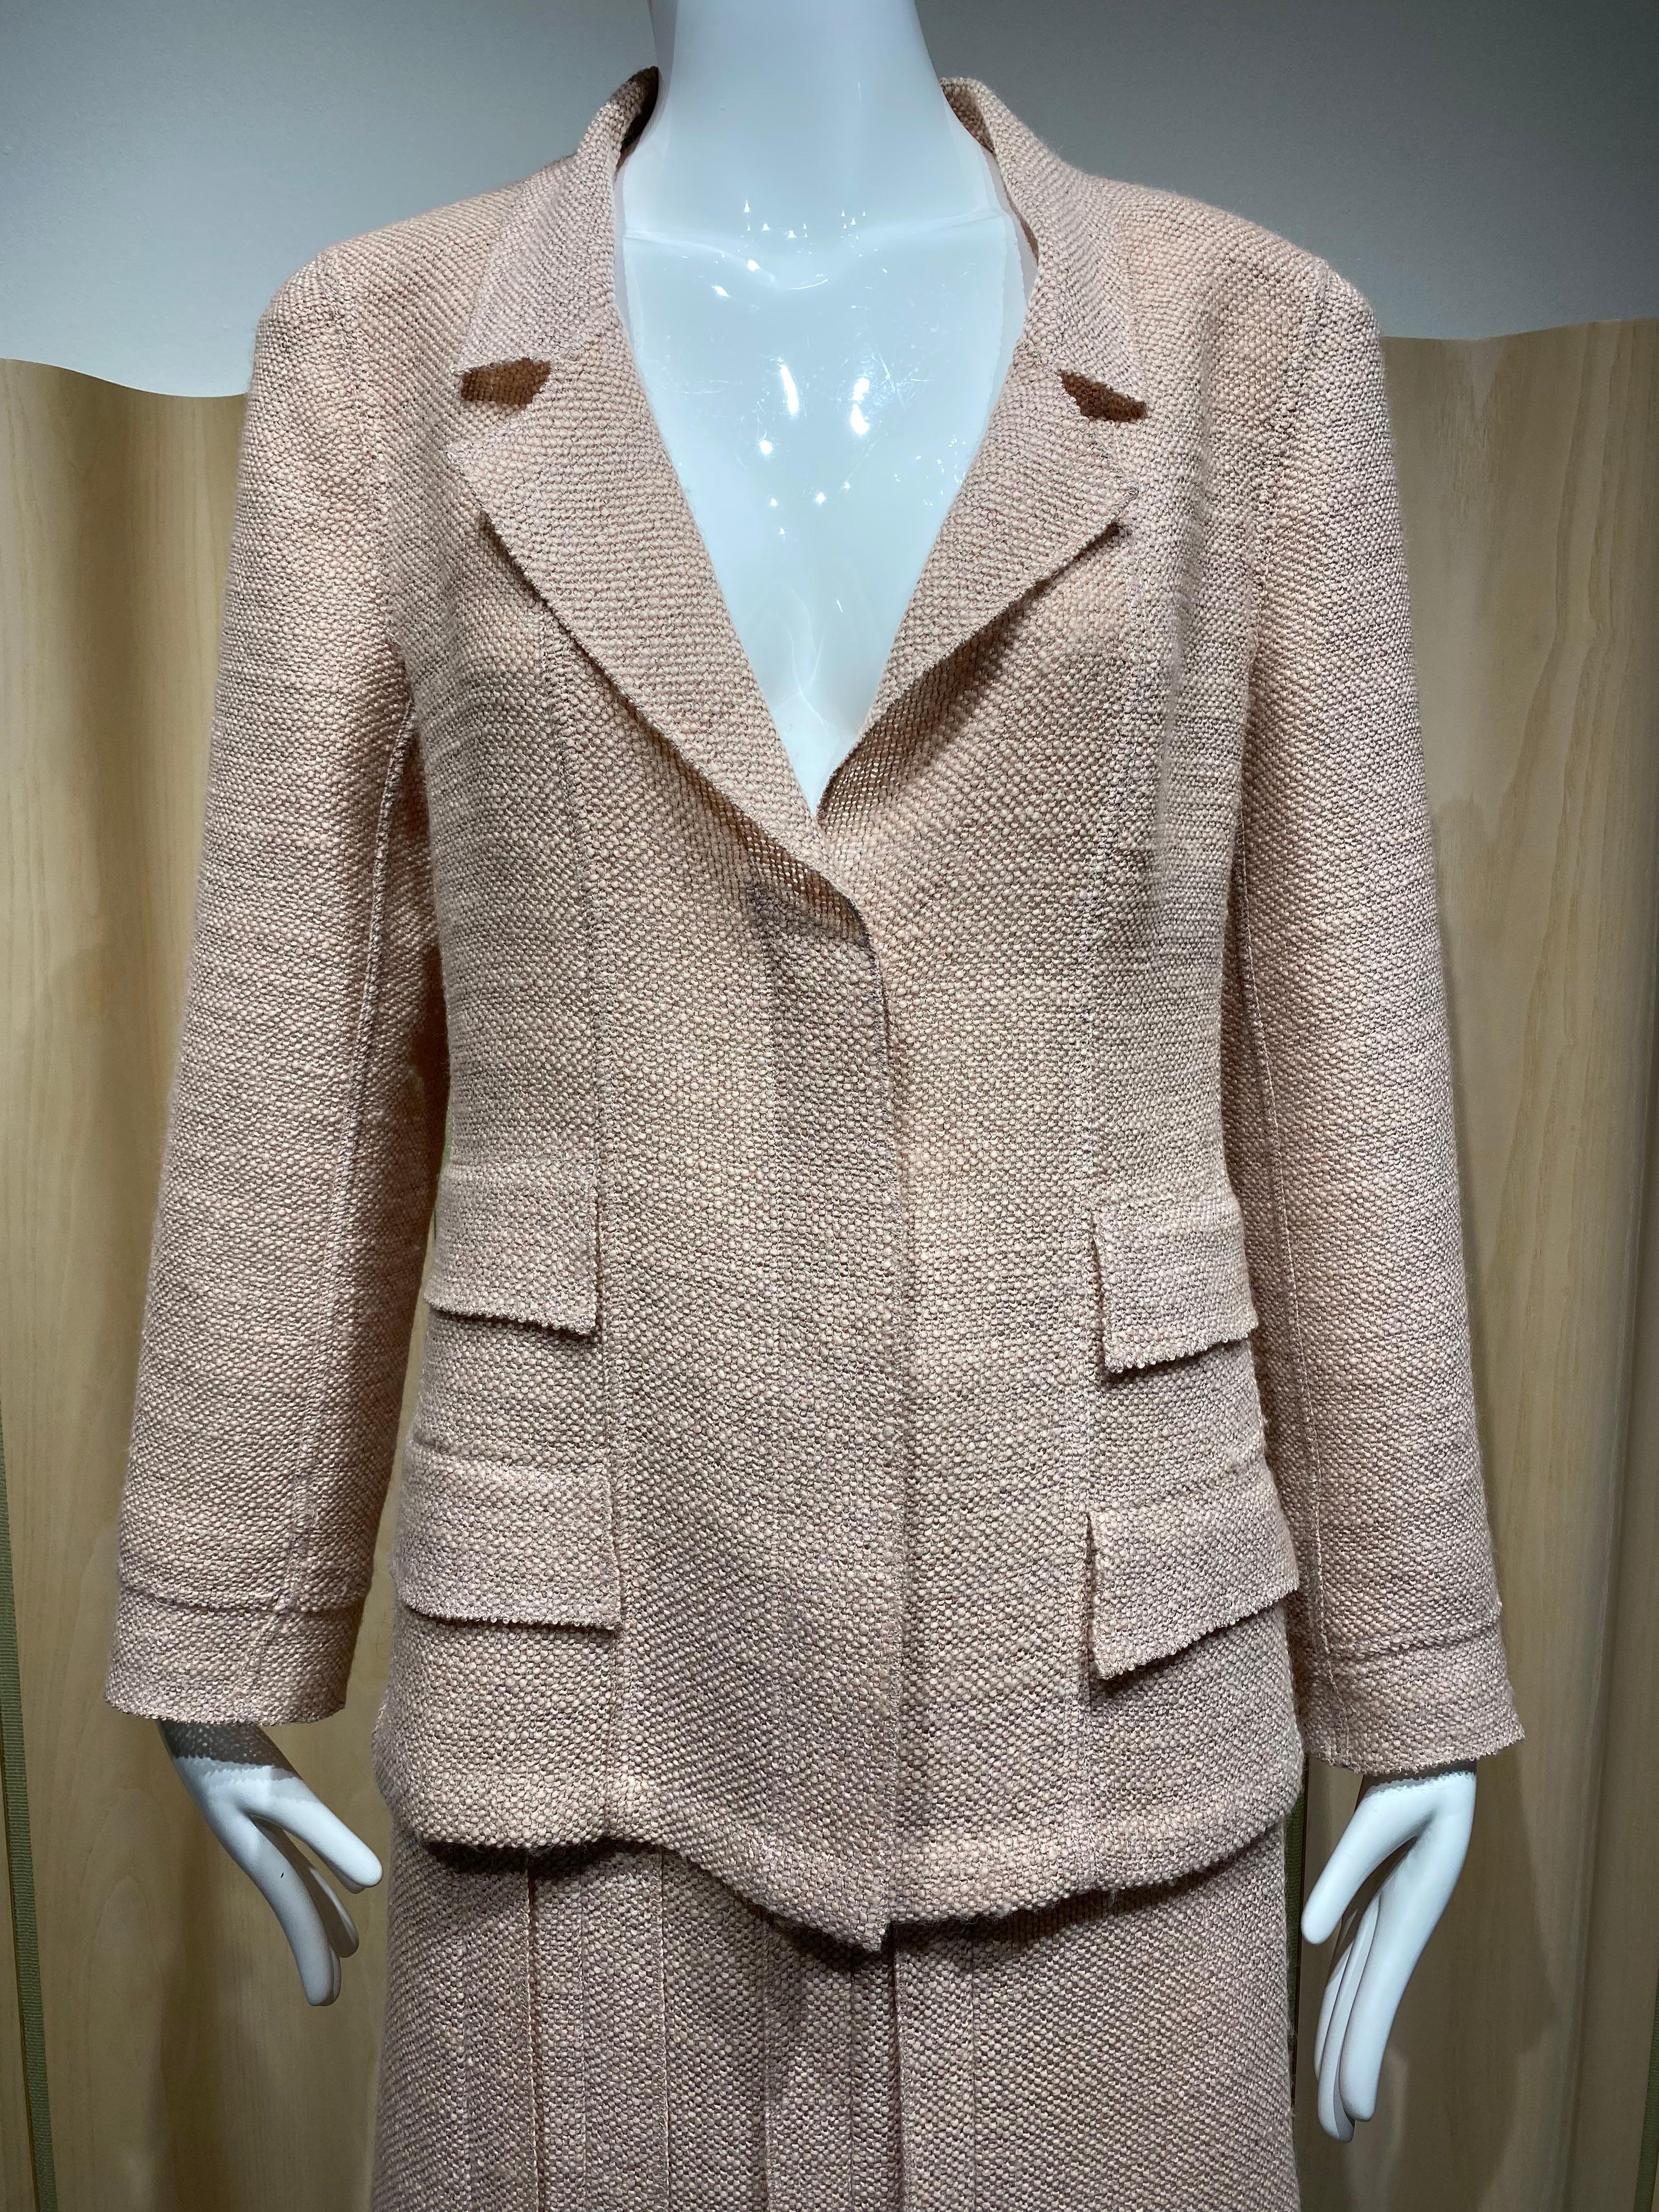 Vintage 90s Chanel blush pink /pale pink light wool suits lined in silk.
Le blazer est doté d'un bouton en acrylique transparent. La jupe est à la longueur du genou.
Taille marquée : 42fr / Medium - Large 
Mesures pour le blazer/la veste : 
BusteL